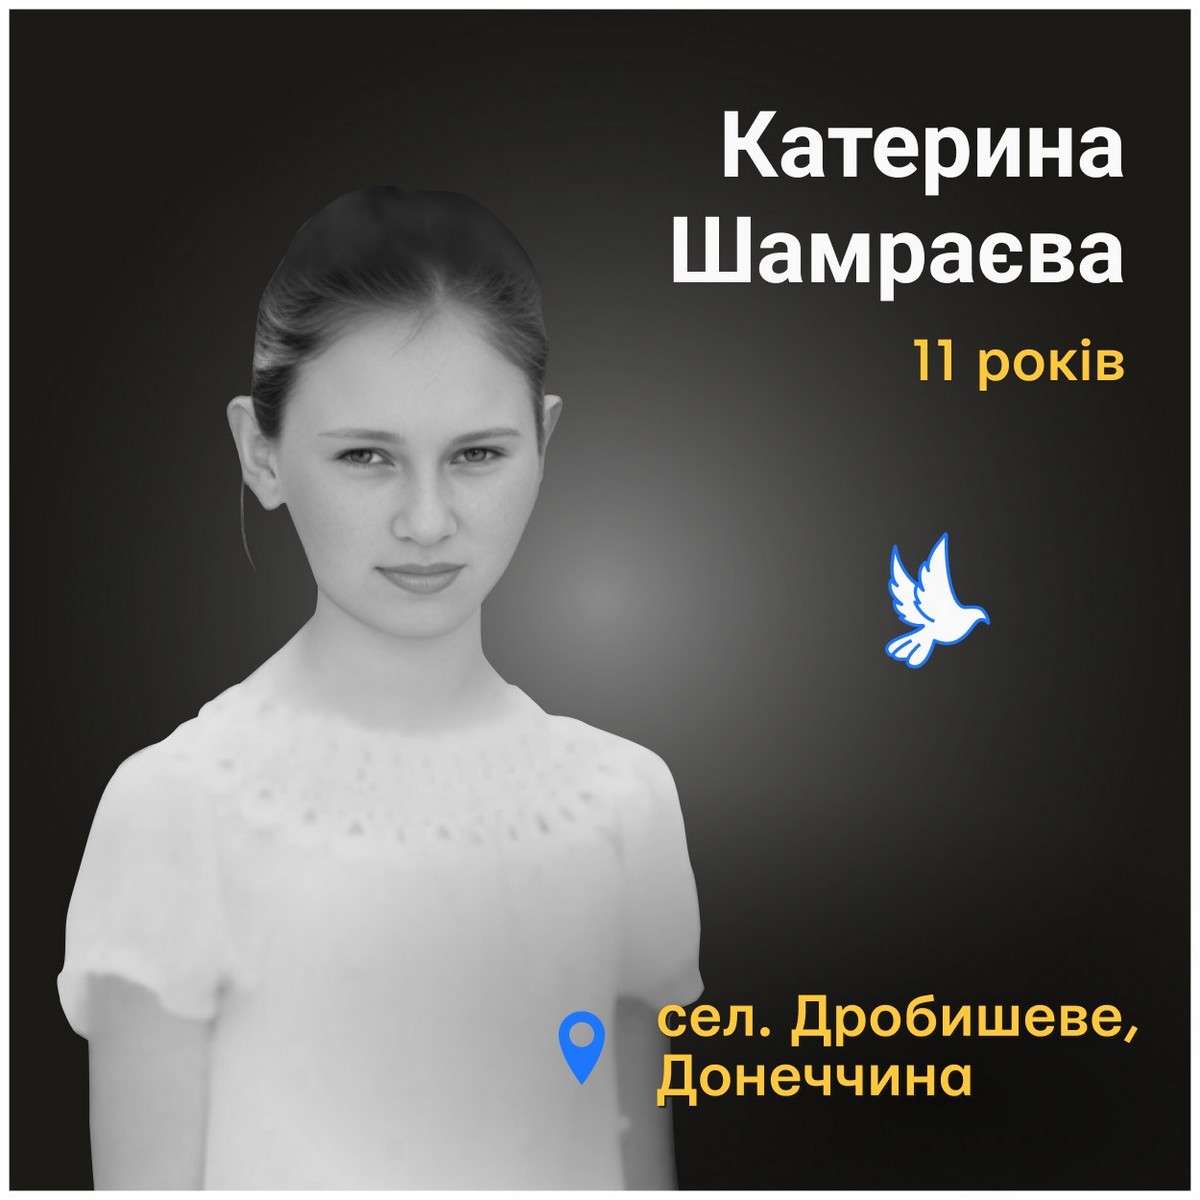 Загиблі діти України: Катерина Шамраєва